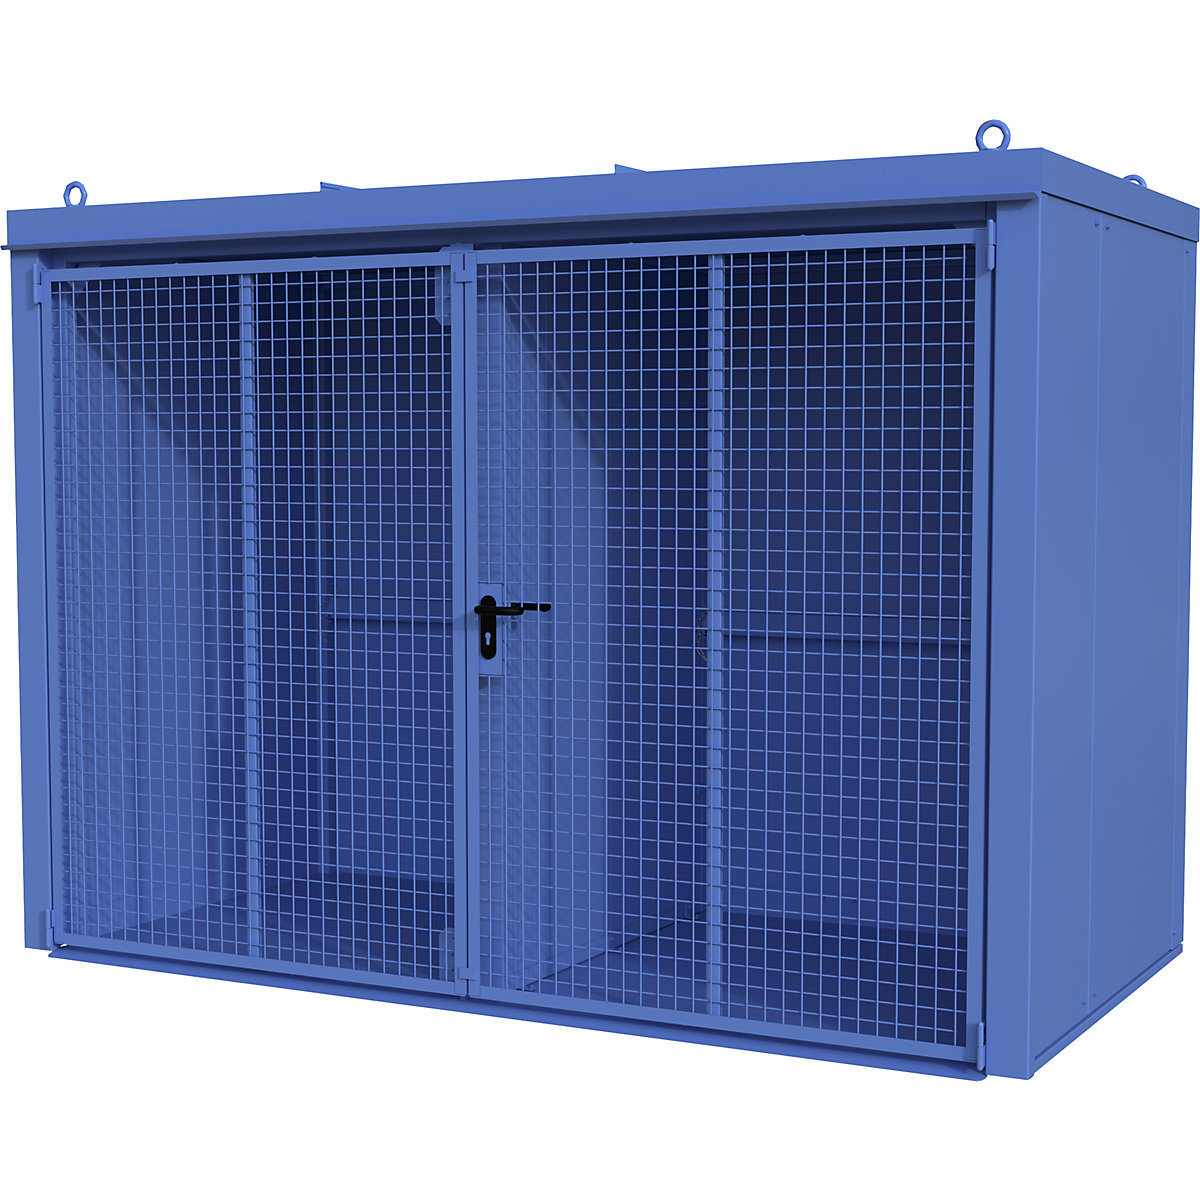 Gasflaschencontainer mit Trennwand, feuerbeständig eurokraft pro, für 60 Flaschen mit Ø 230 mm, blau